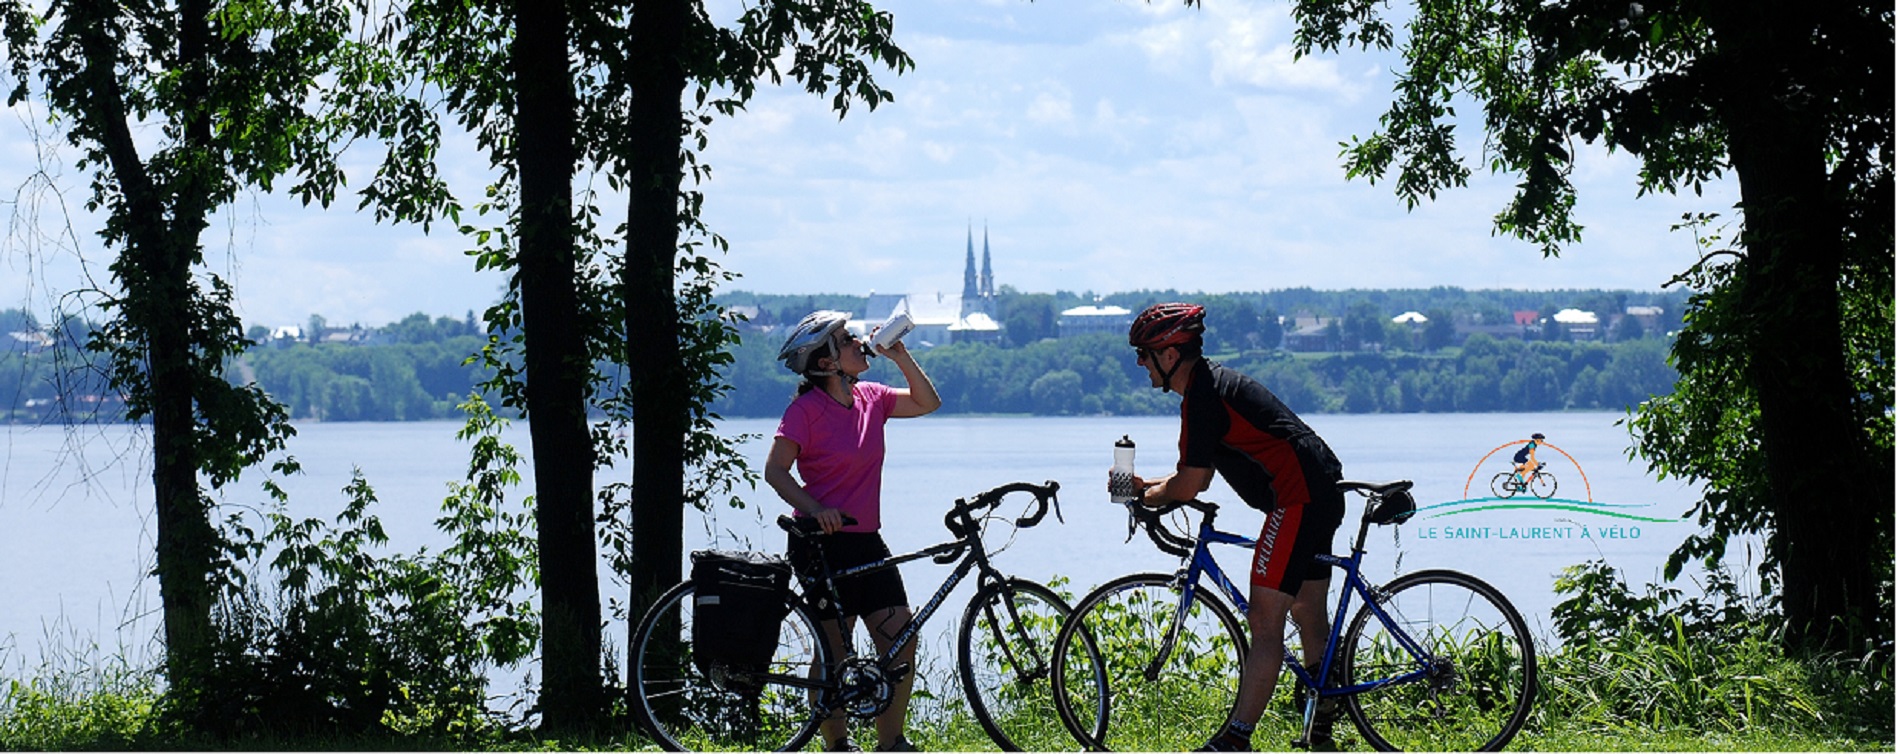 Le-Saint-Laurent-à-vélo-site-web-accueil